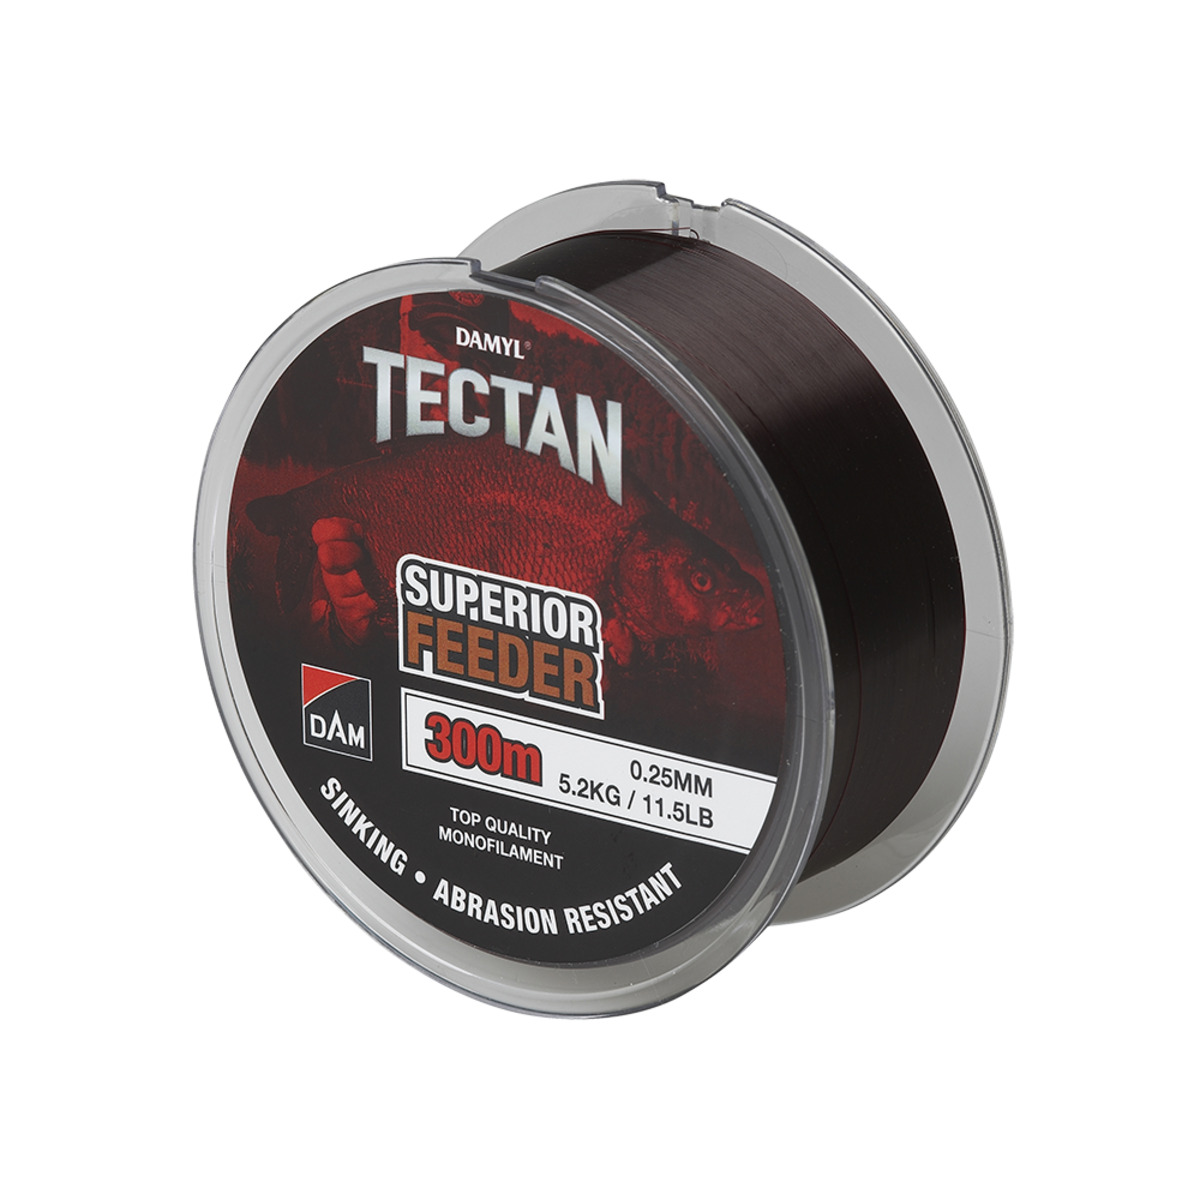 Dam Tectan Superior Feeder 300m - 0.16MM 2.3KG 5LBS BROWN